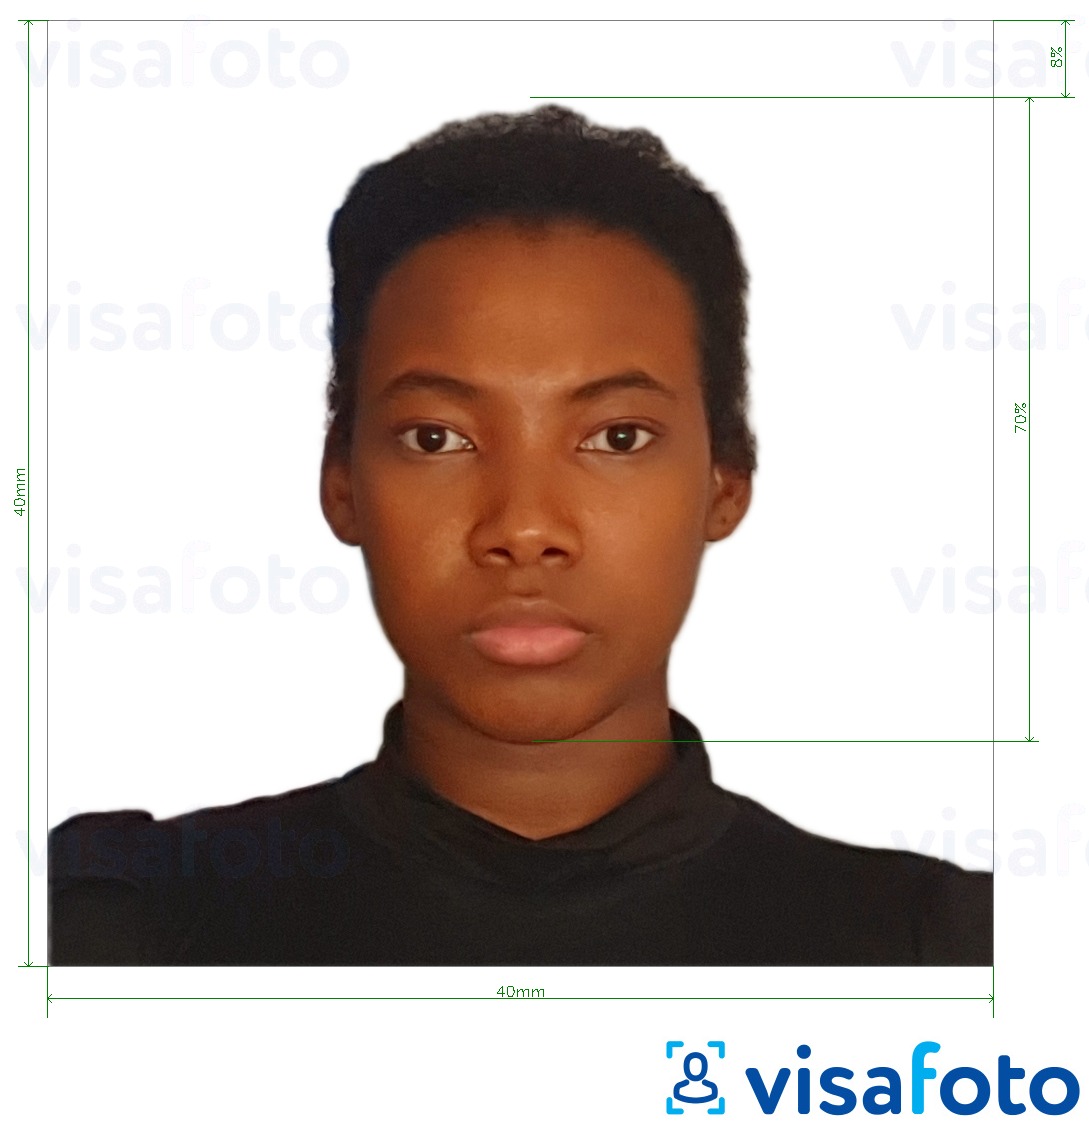 Contoh foto untuk Visa Madagaskar 40x40 mm dengan spesifikasi saiz yang tepat.